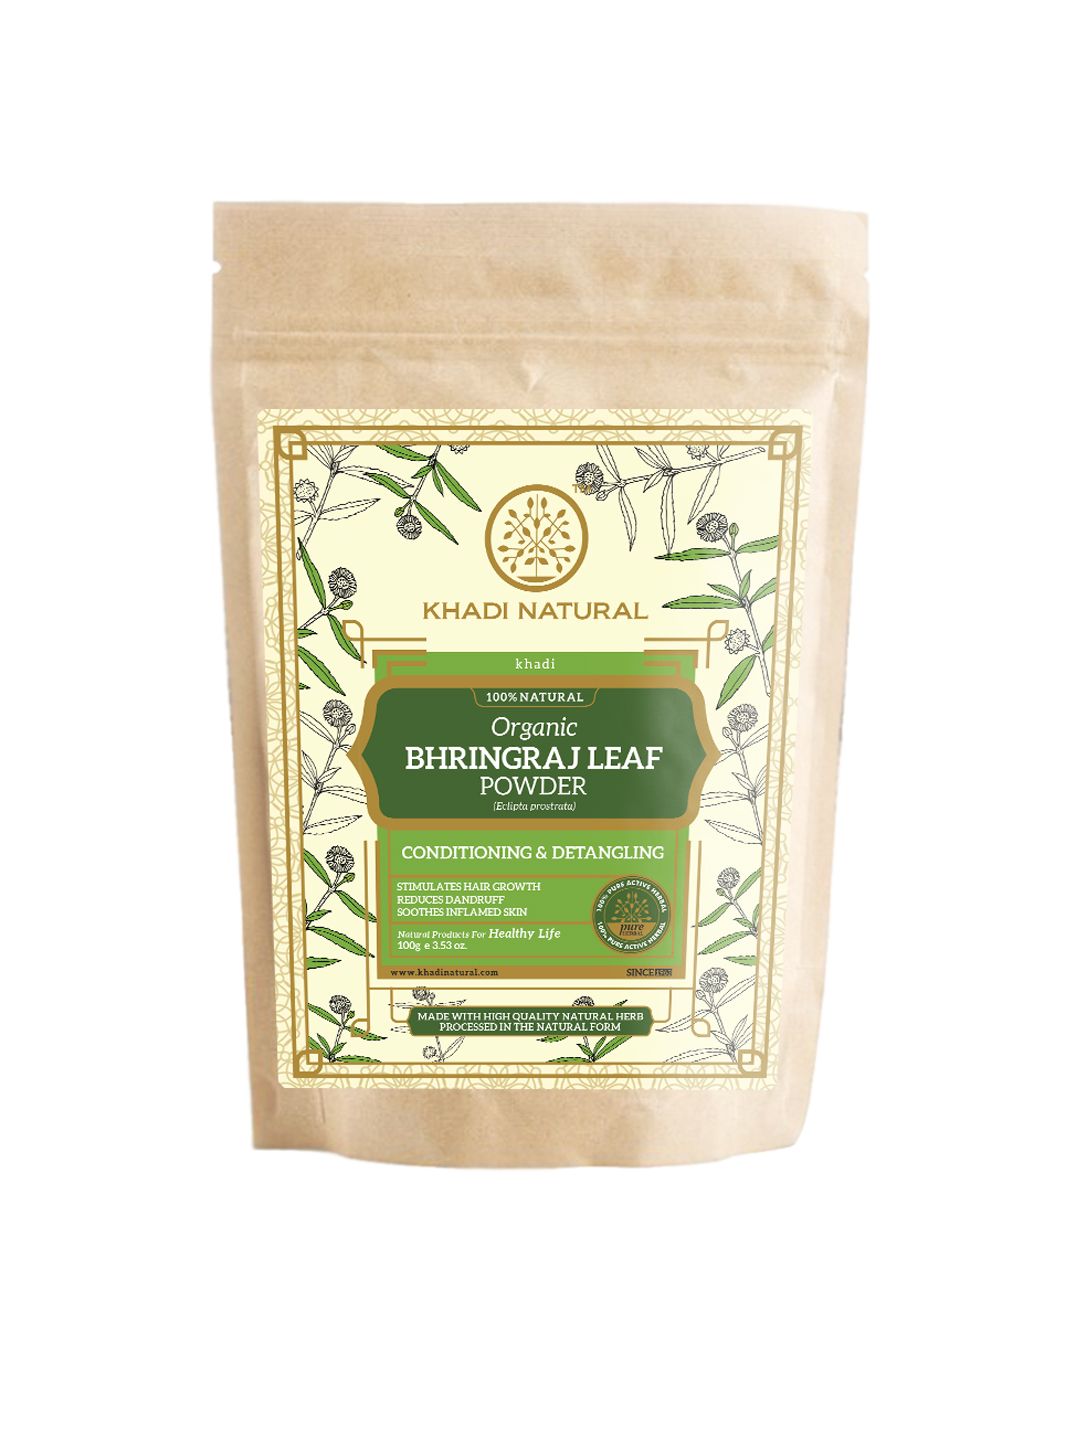 Khadi Natural Herbal Bhringraj Leaf organic Powder Price in India